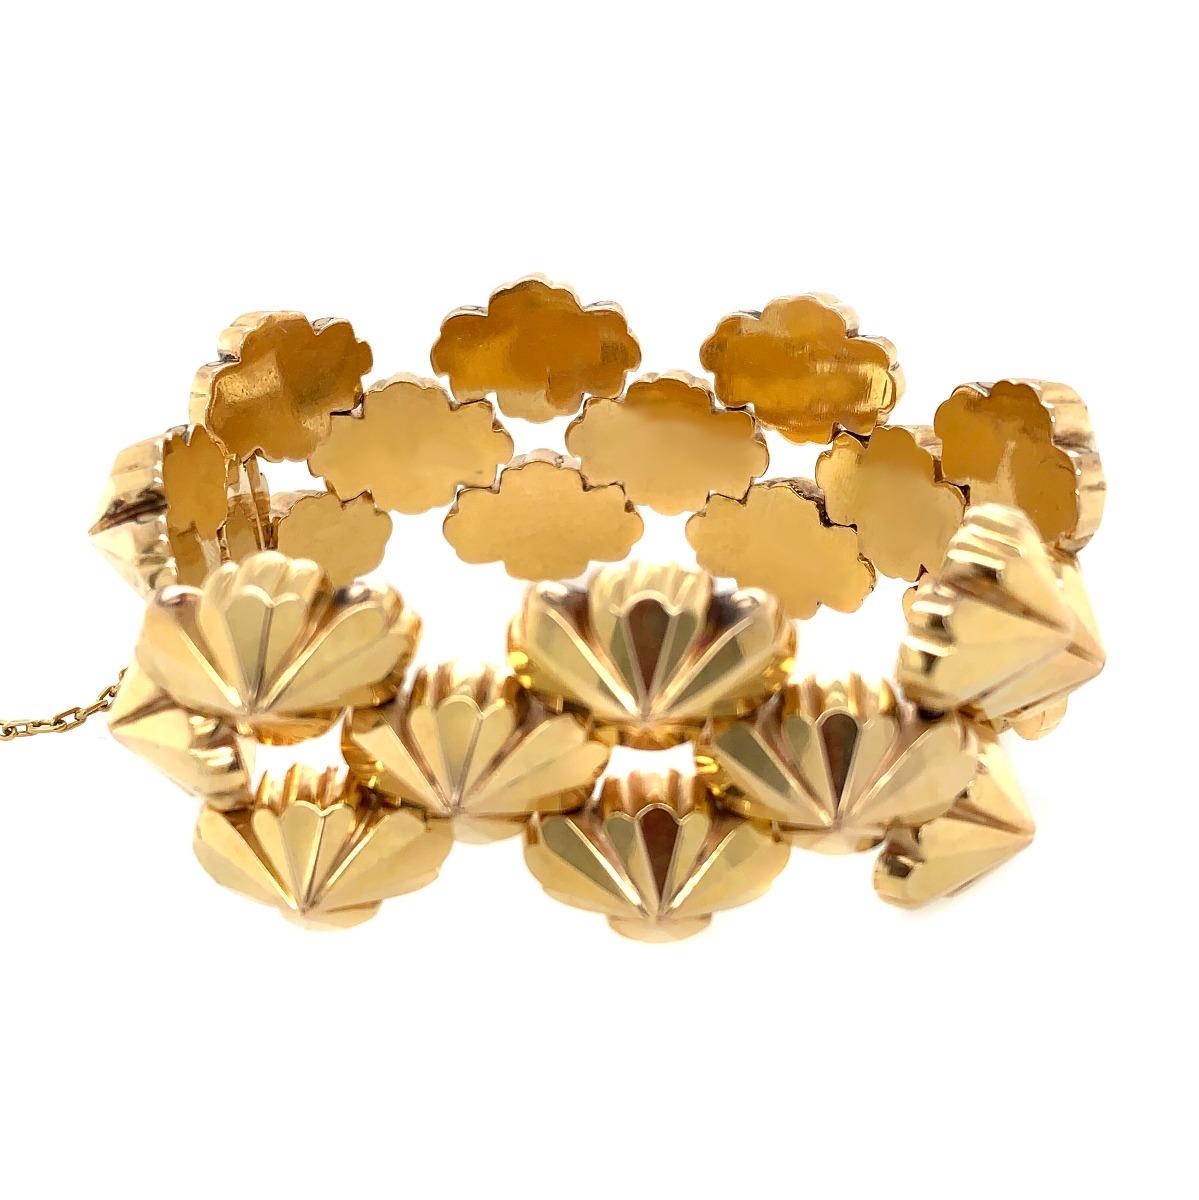 18k rose gold bracelet